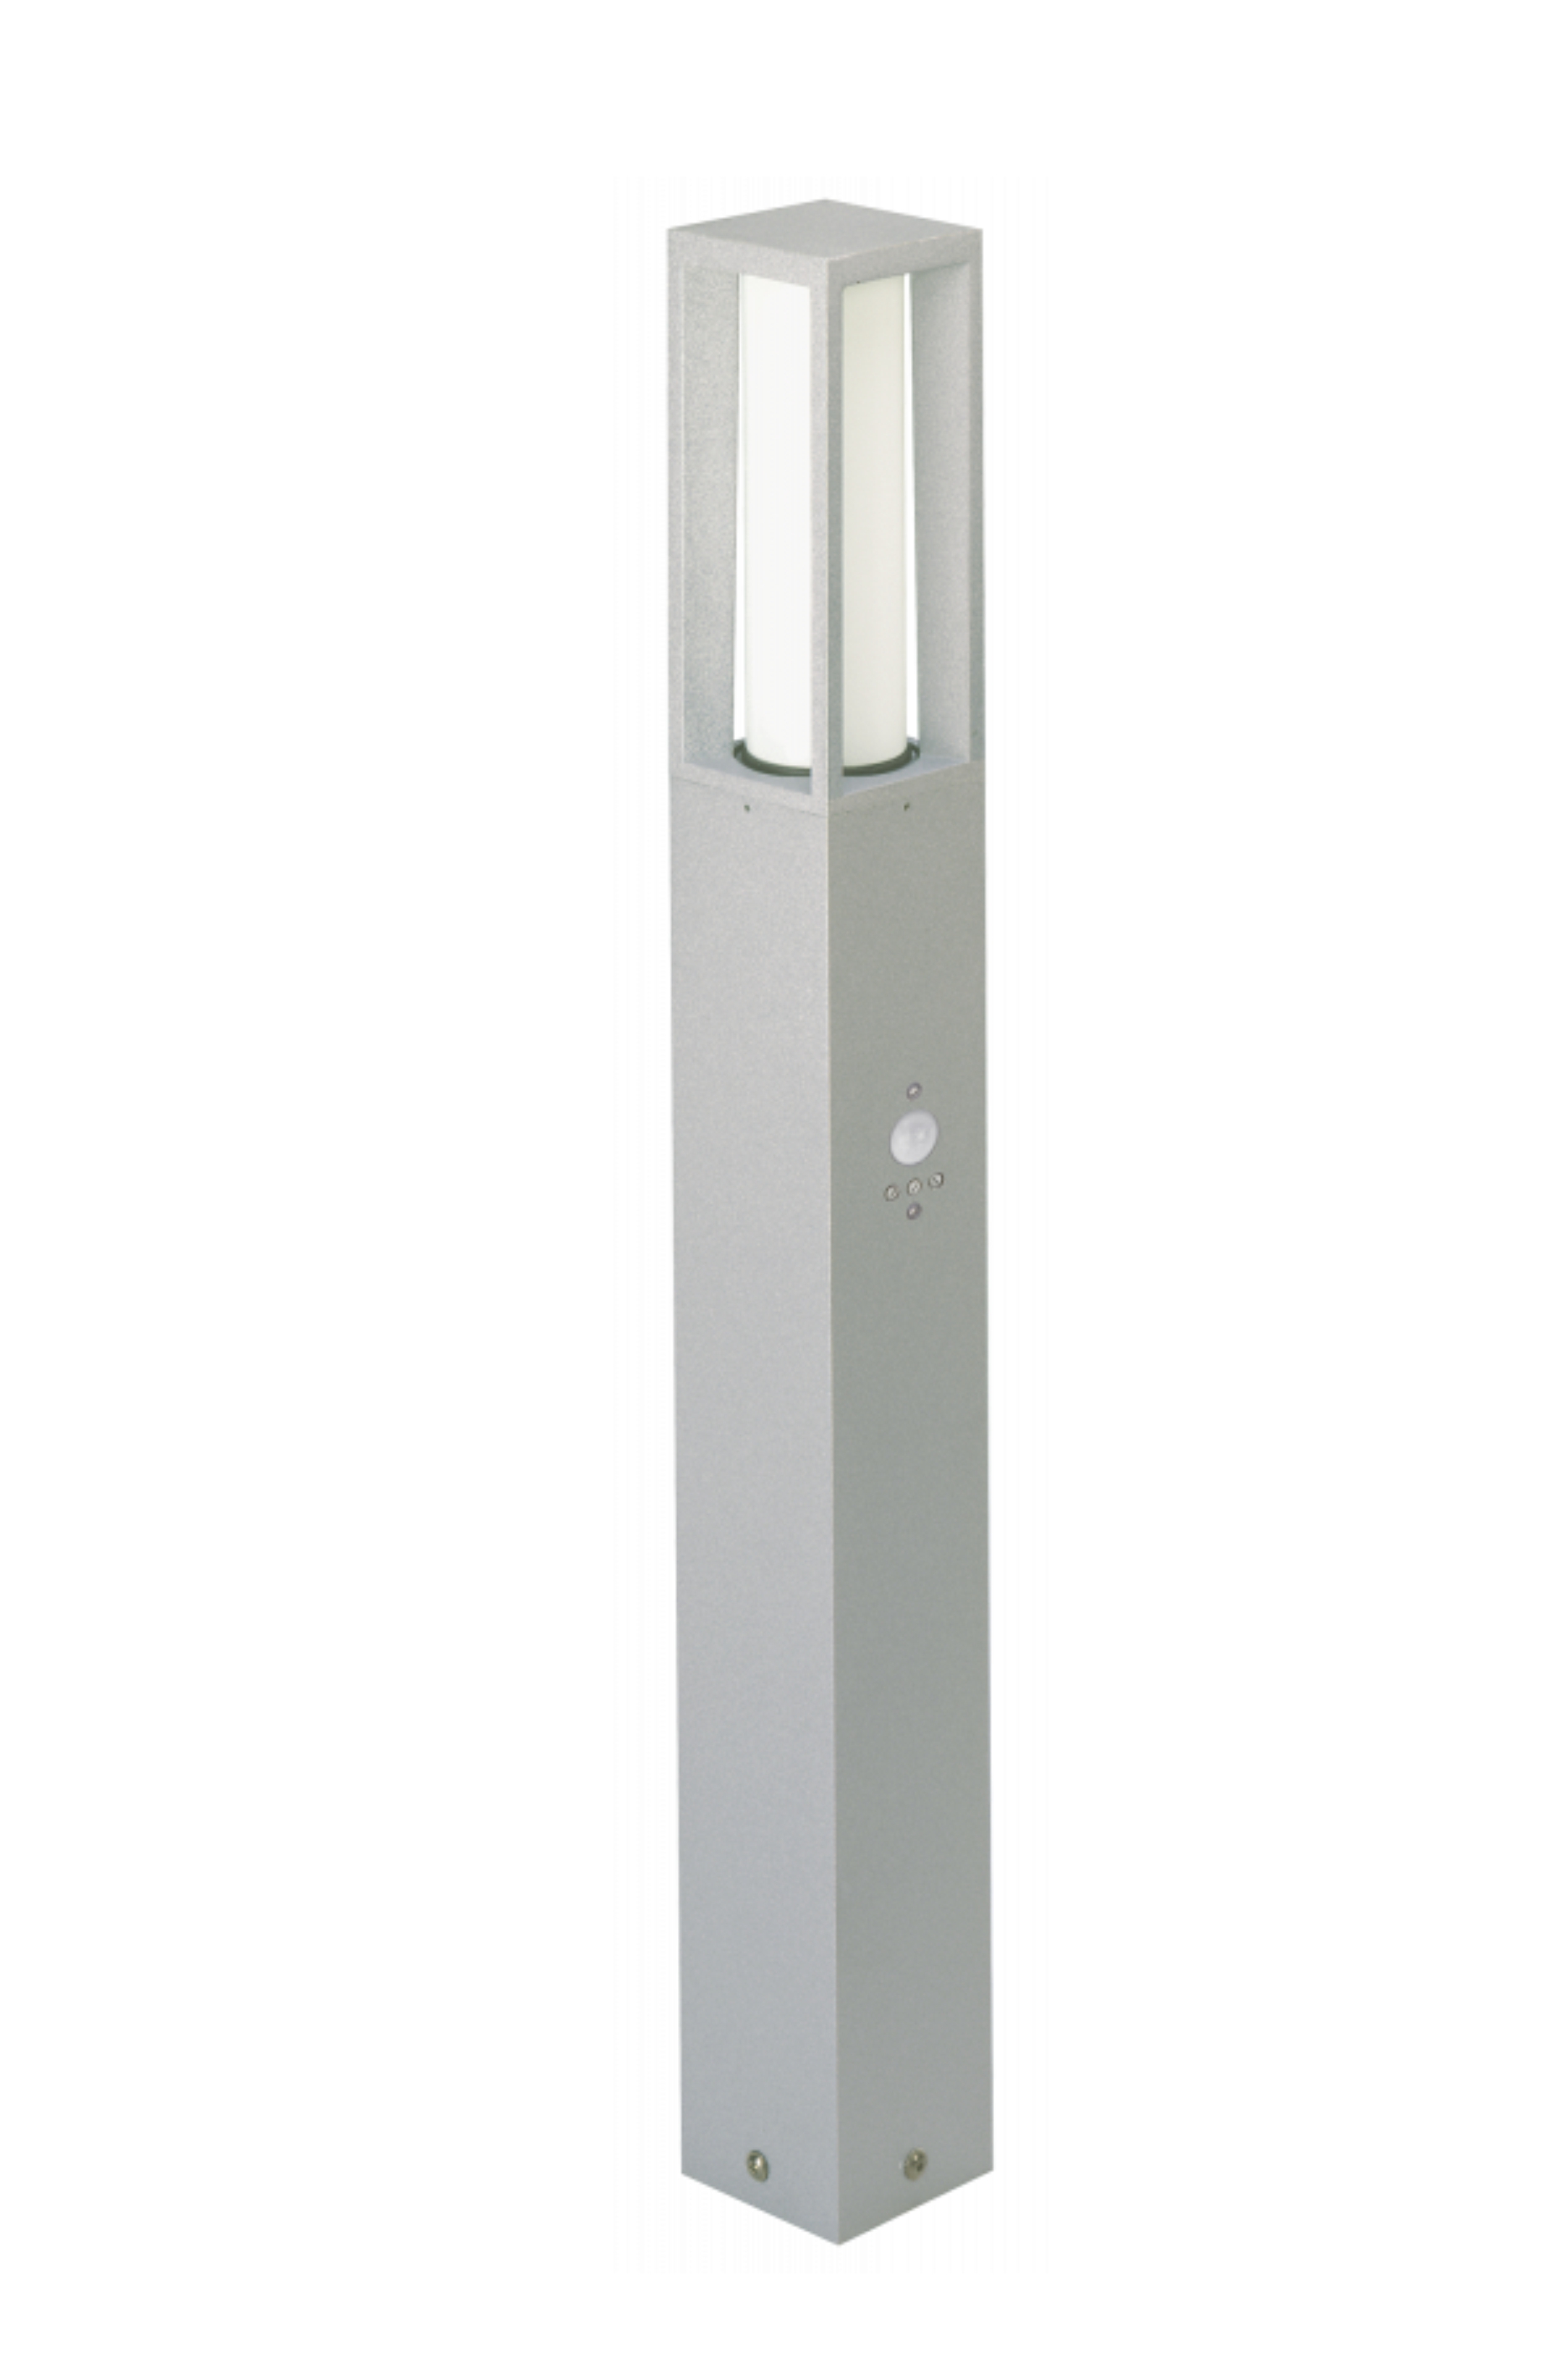 Albert LeuchtenPollerleuchte Typ Nr. 2066 - Farbe: Silber, mit BWM 90 grad,für 1 x LED max. 20 W, E27